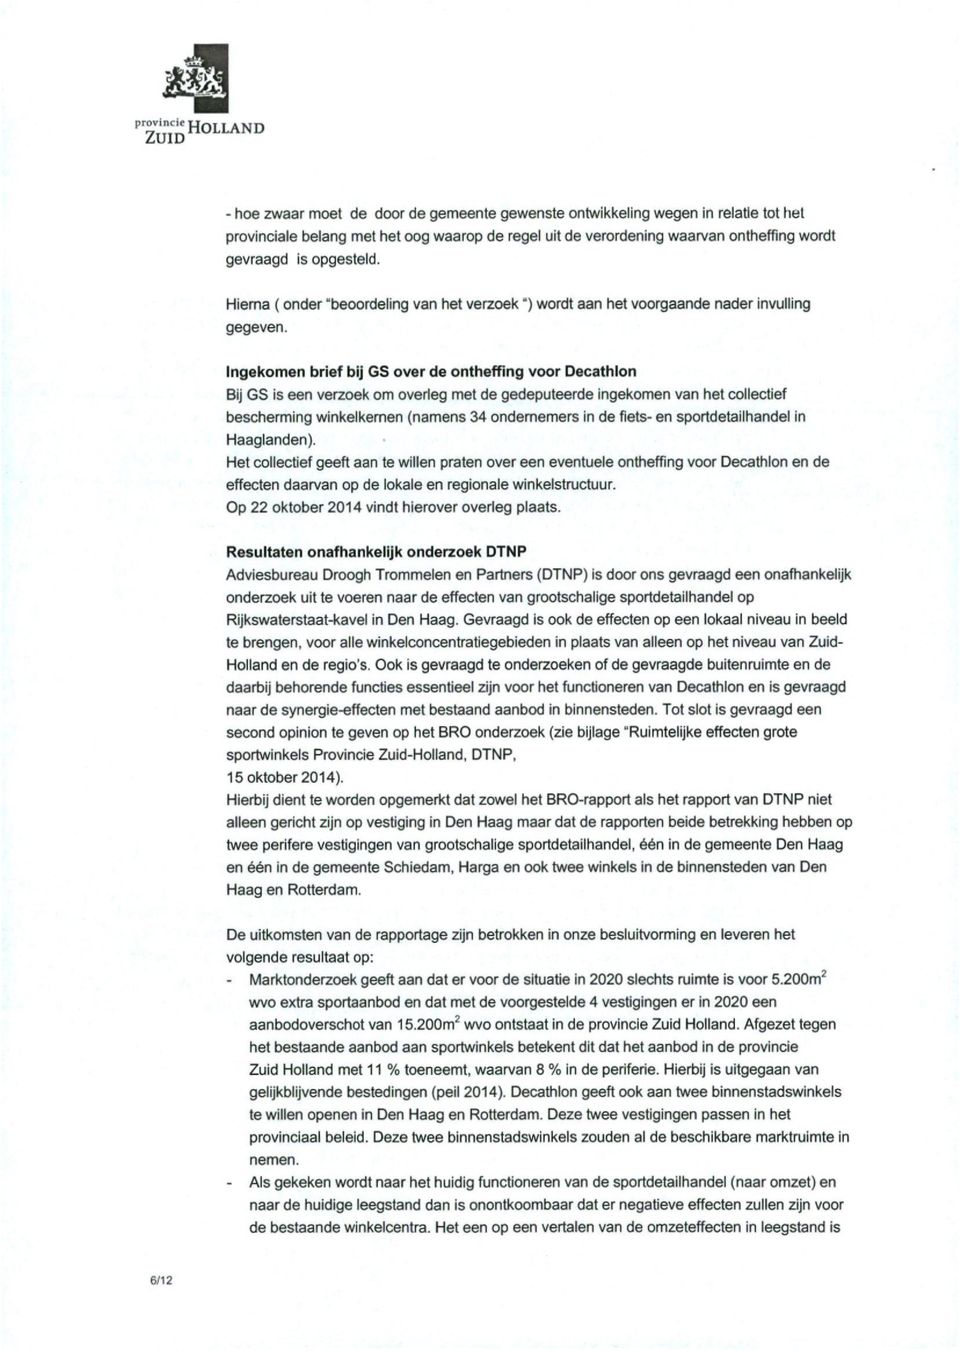 Ingekomen brief bij GS over de ontheffing voor Decathlon Bij GS is een verzoek om overleg met de gedeputeerde ingekomen van het collectief bescherming winkelkemen (namens 34 ondememers in de fiets-